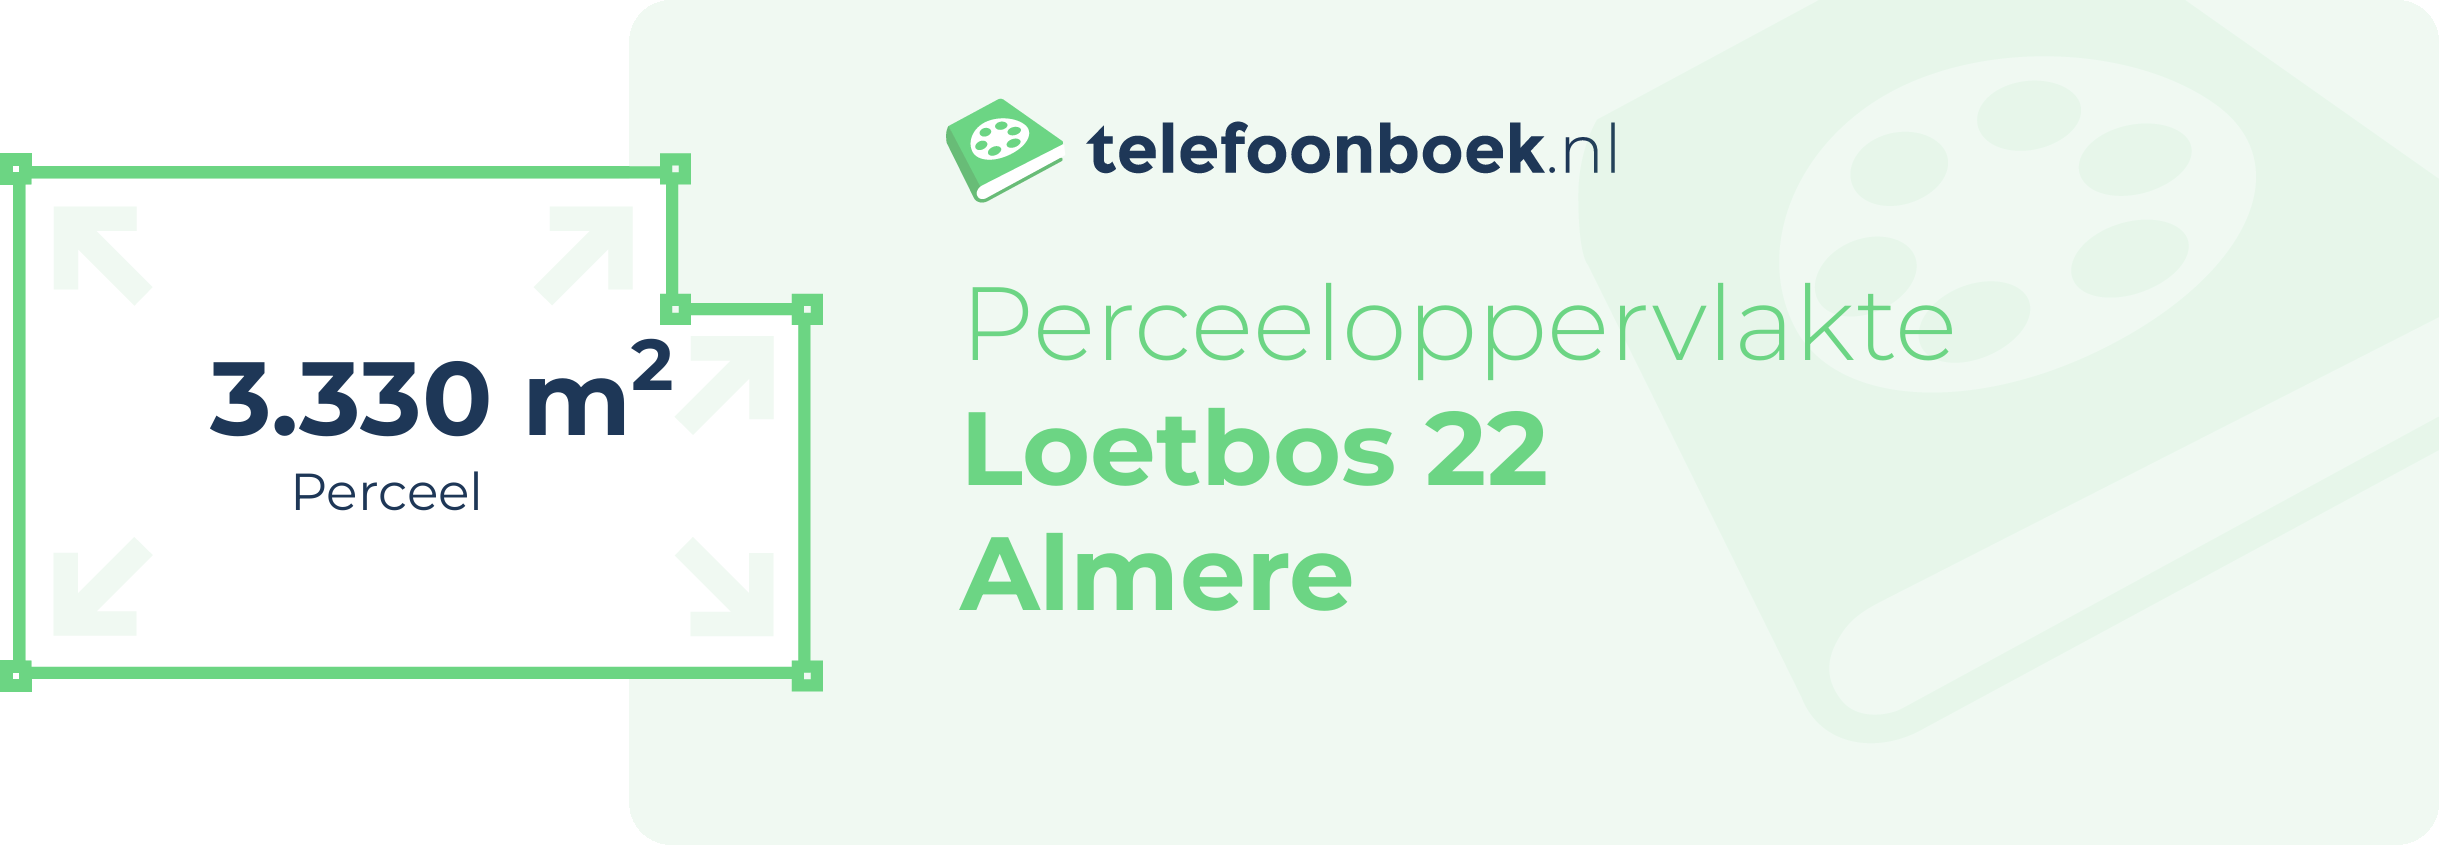 Perceeloppervlakte Loetbos 22 Almere